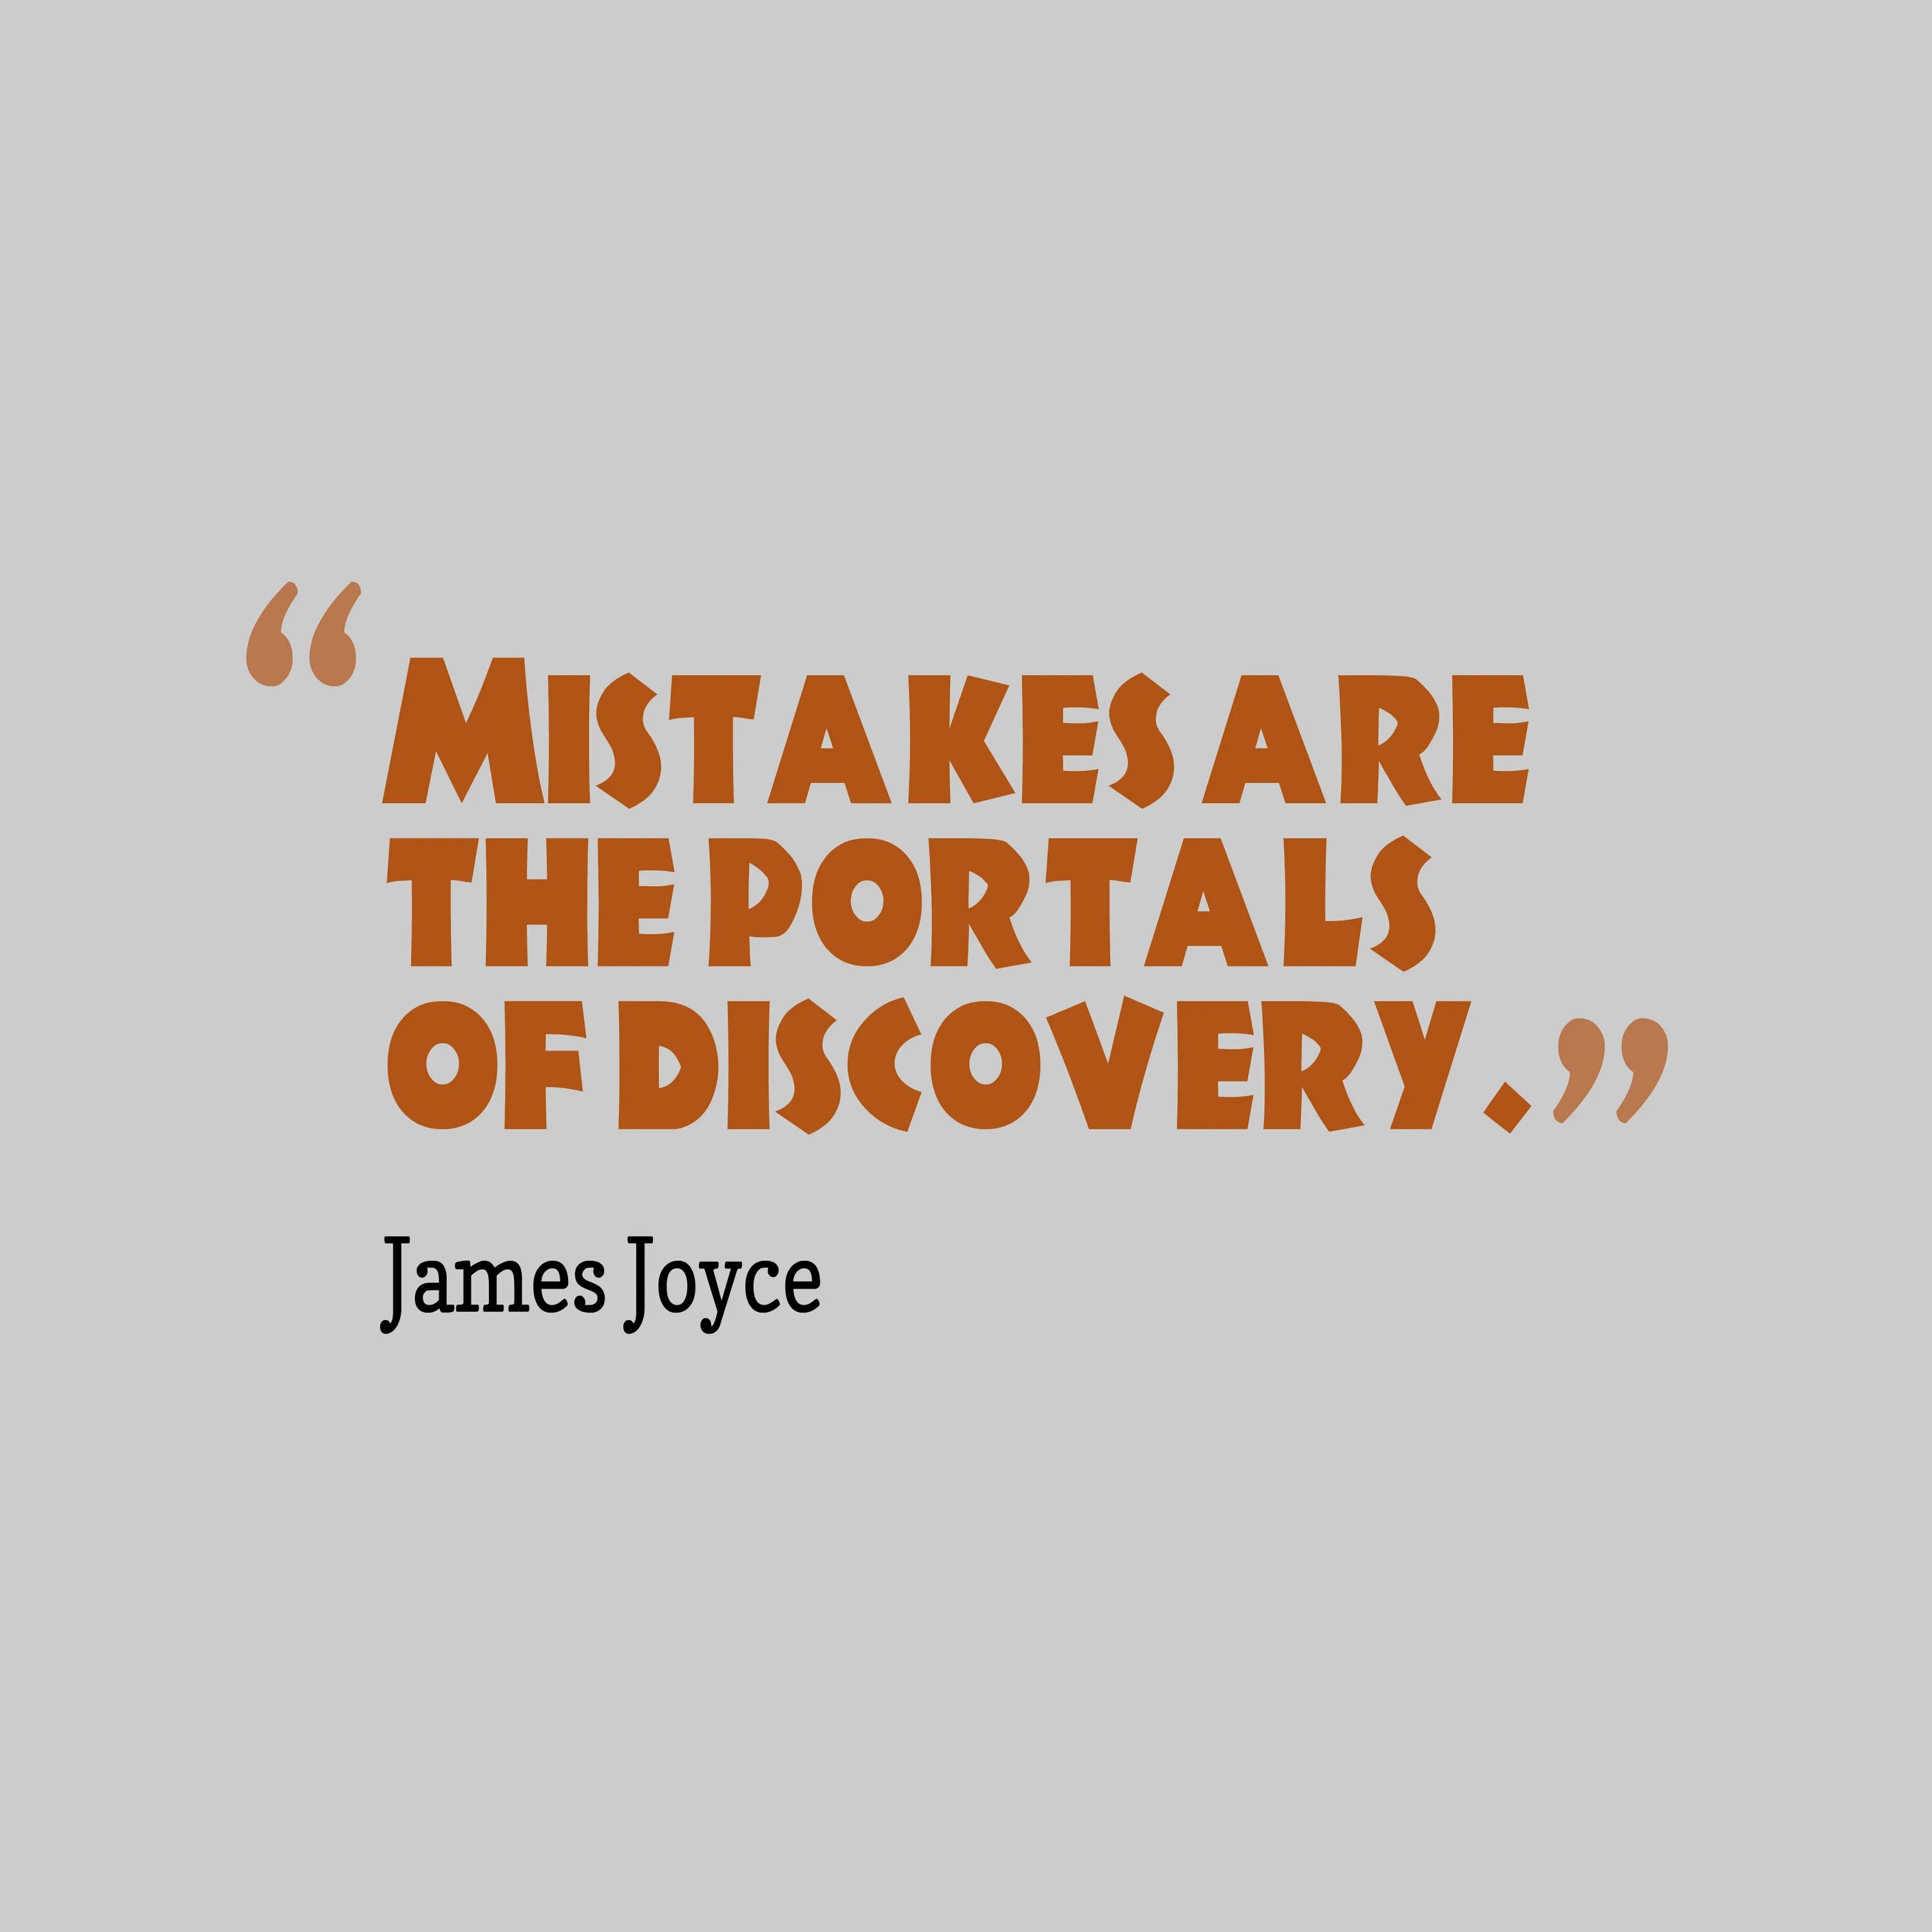 Mistakes quotes. Quotes about mistakes. Mistakes are. Positive quotes about mistakes. Make mistake good